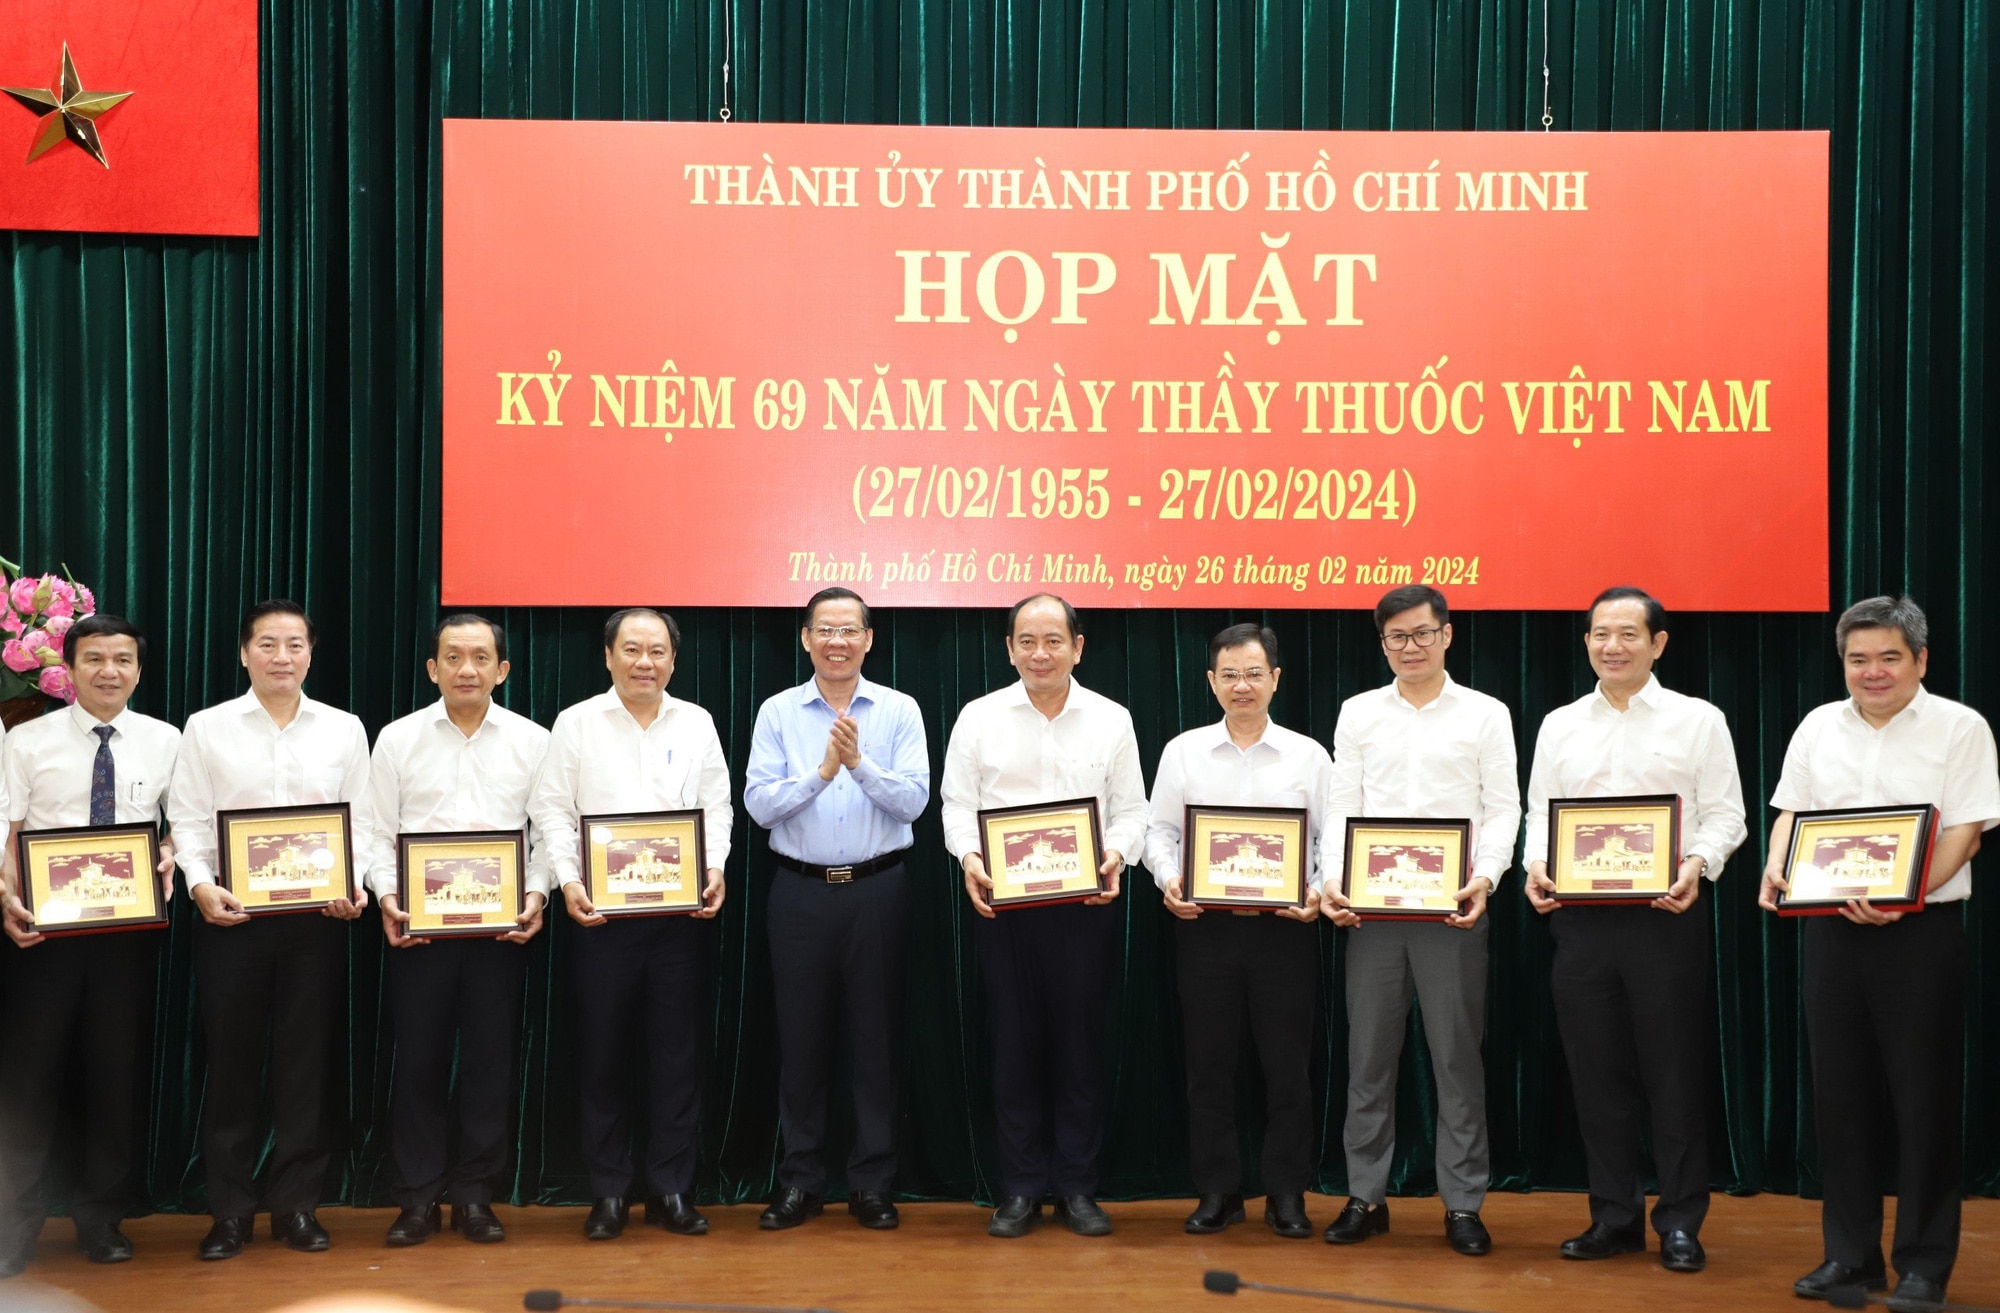 Chủ tịch UBND TP.HCM Phan Văn Mãi trao quà chúc mừng đội ngũ y bác sĩ - Ảnh: T.T 